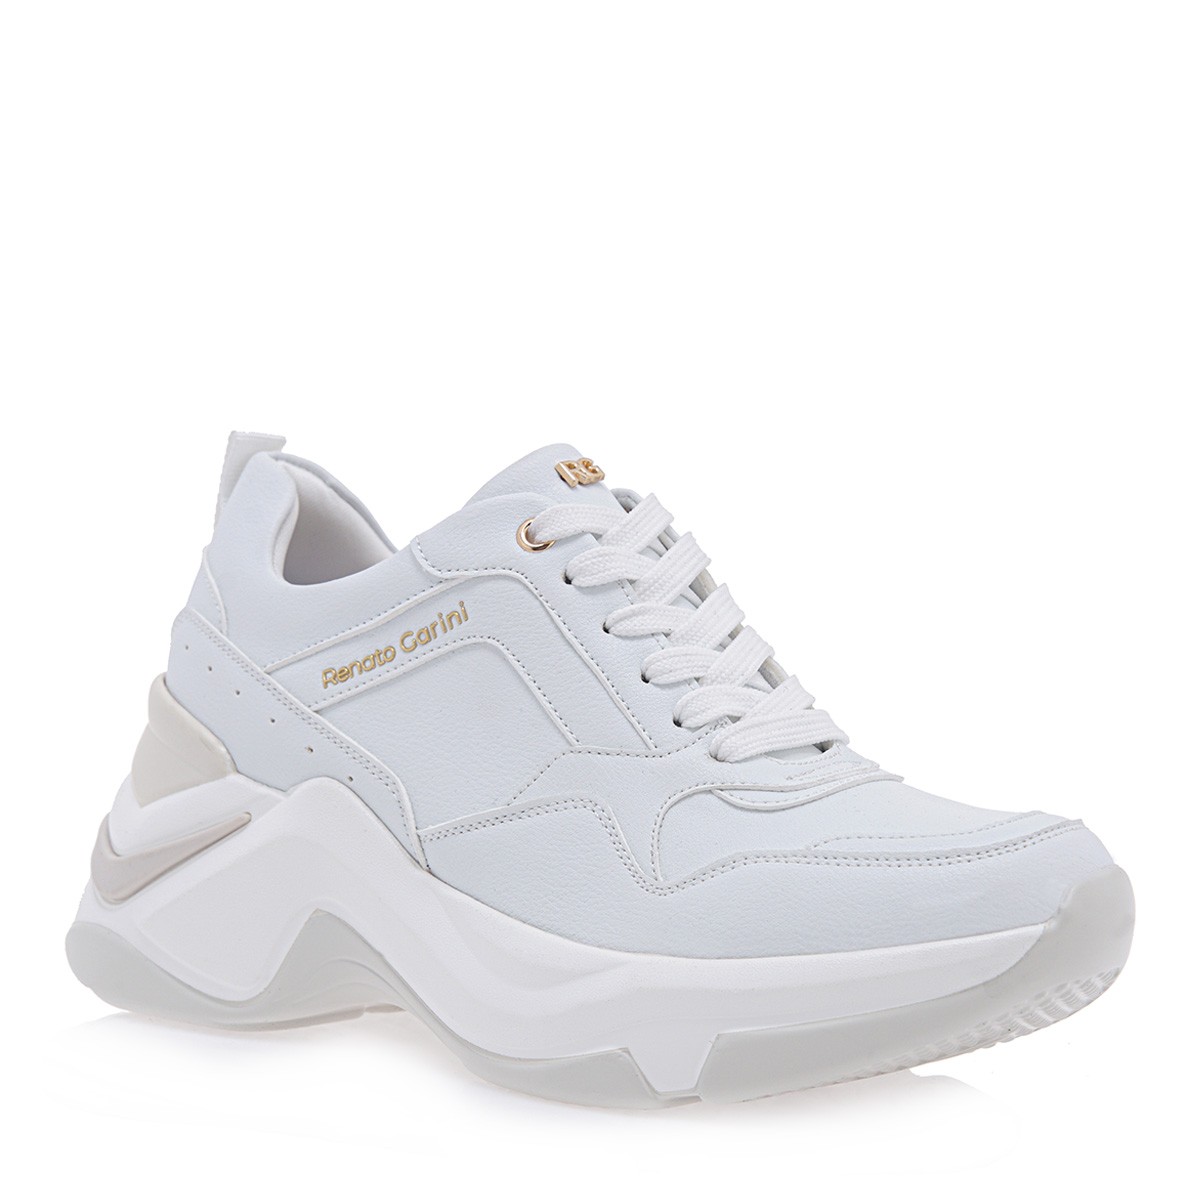 Renato Garini Γυναικεία Παπούτσια Sneakers 618-19R Λευκό P119R6183651